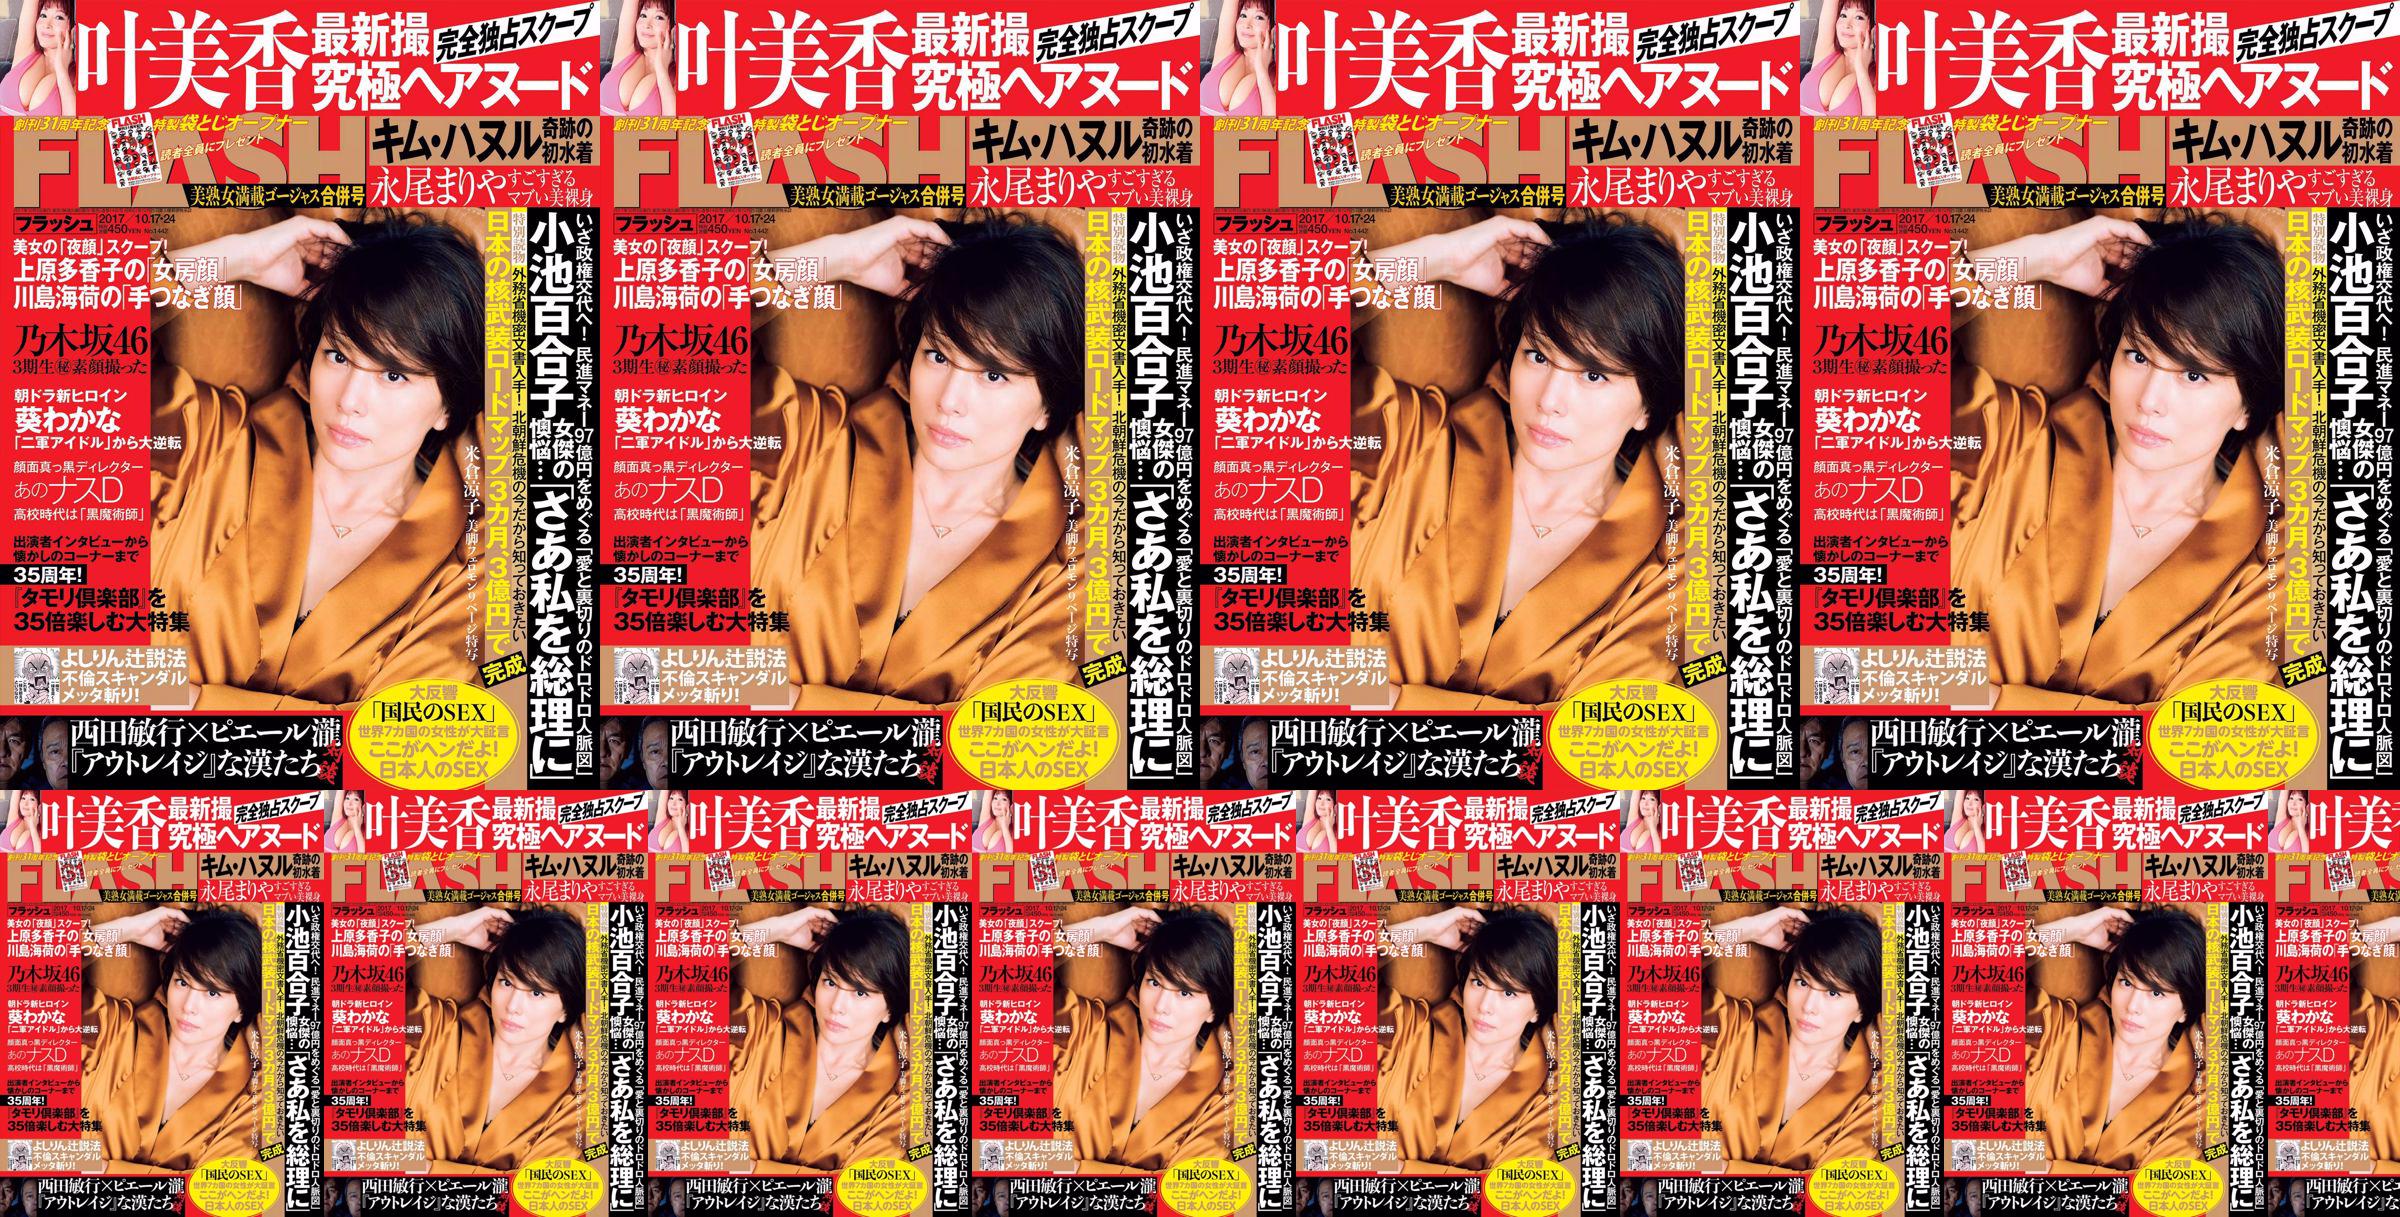 [FLASH] Yonekura Ryoko Ye Meixiang Tachibana Flower Rin Nagao Rika 2017.10.17-24 Revista fotográfica No.7c2e3e Página 5